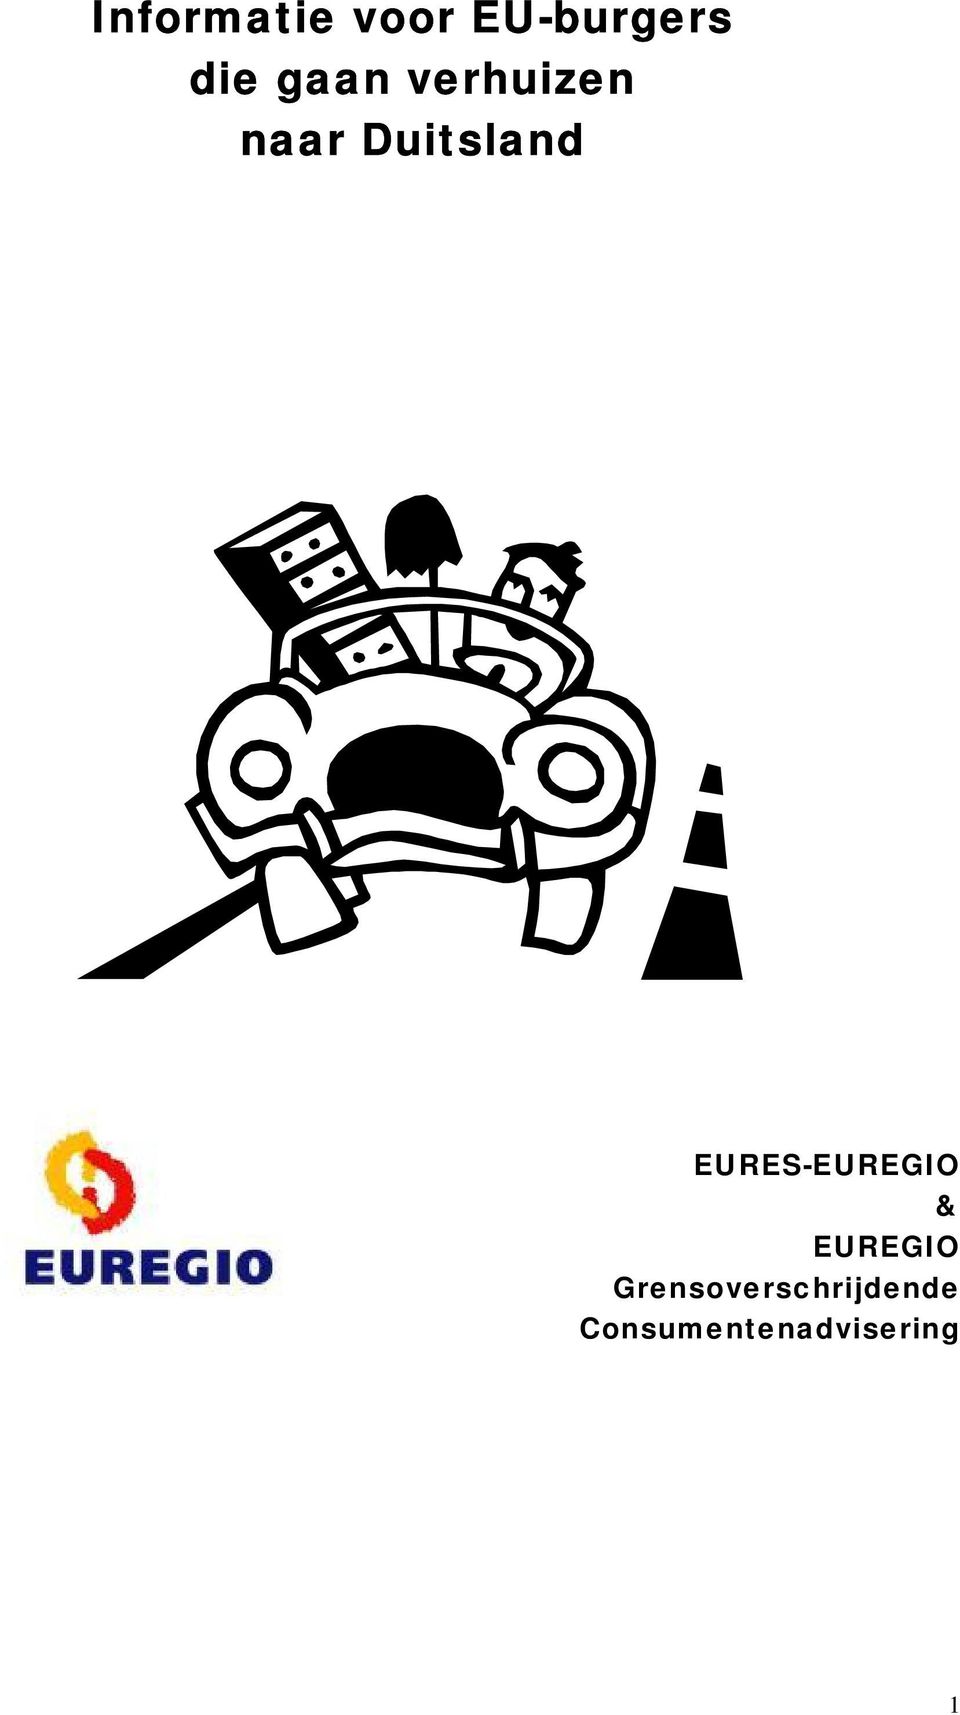 EURES-EUREGIO & EUREGIO